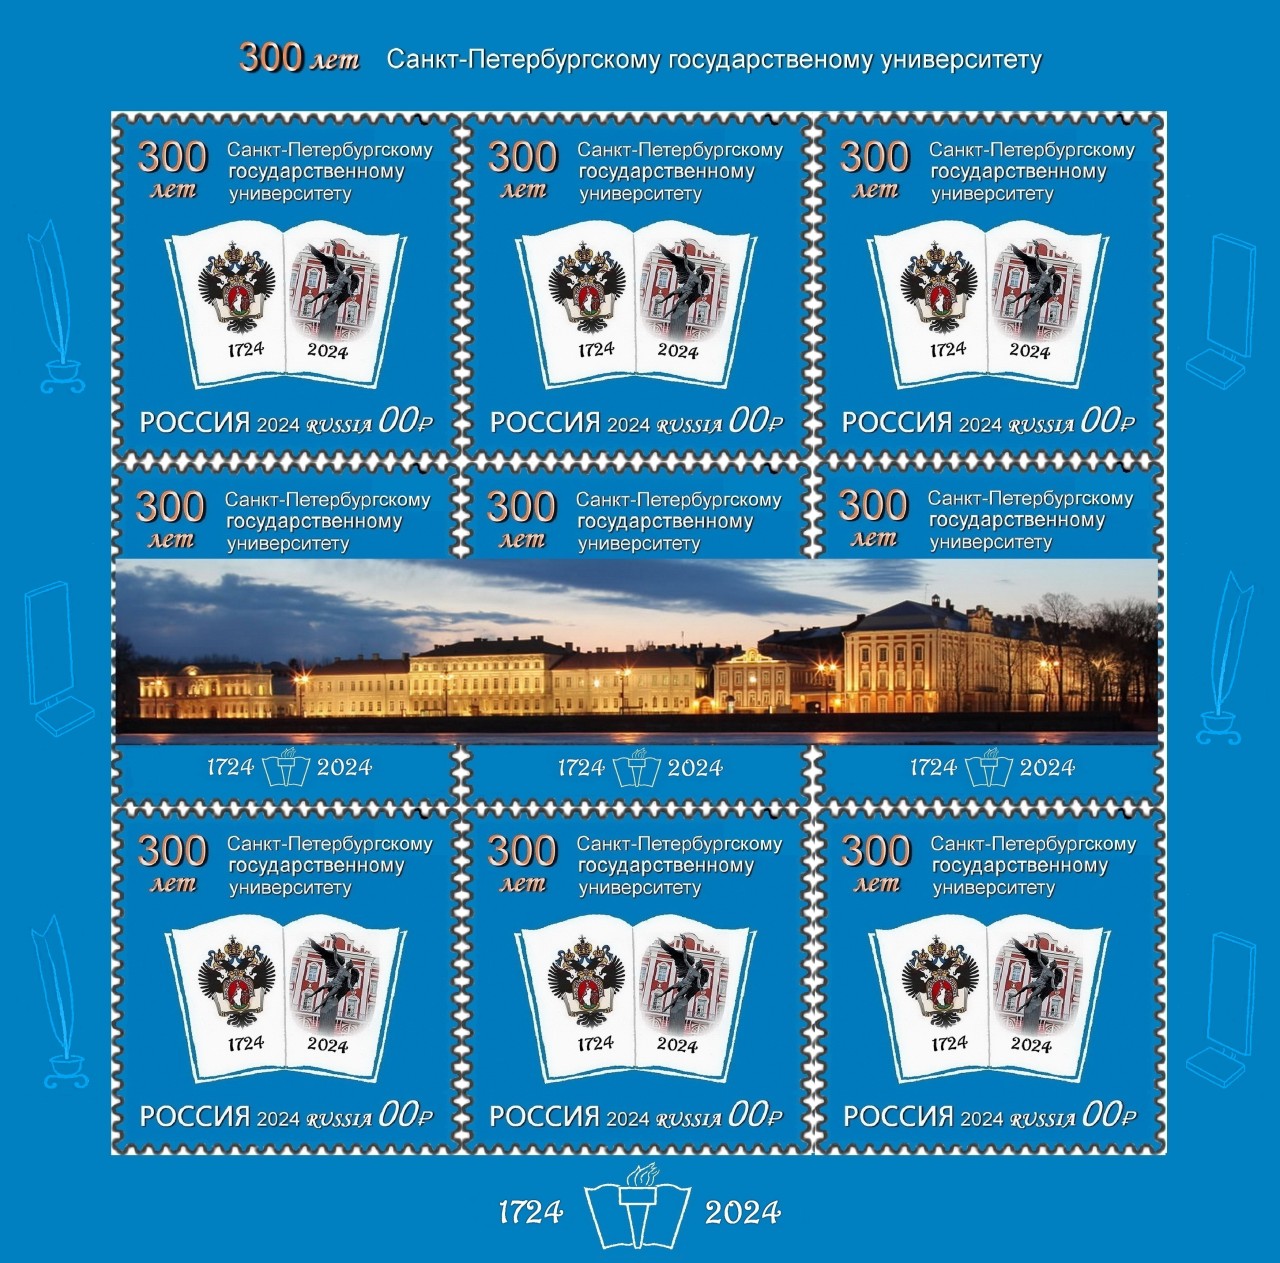 Малый лист почтовых марок -300 лет Санкт-Петербургскому государственному университету (Презентационный любительский проект вне студенческого конкурса)